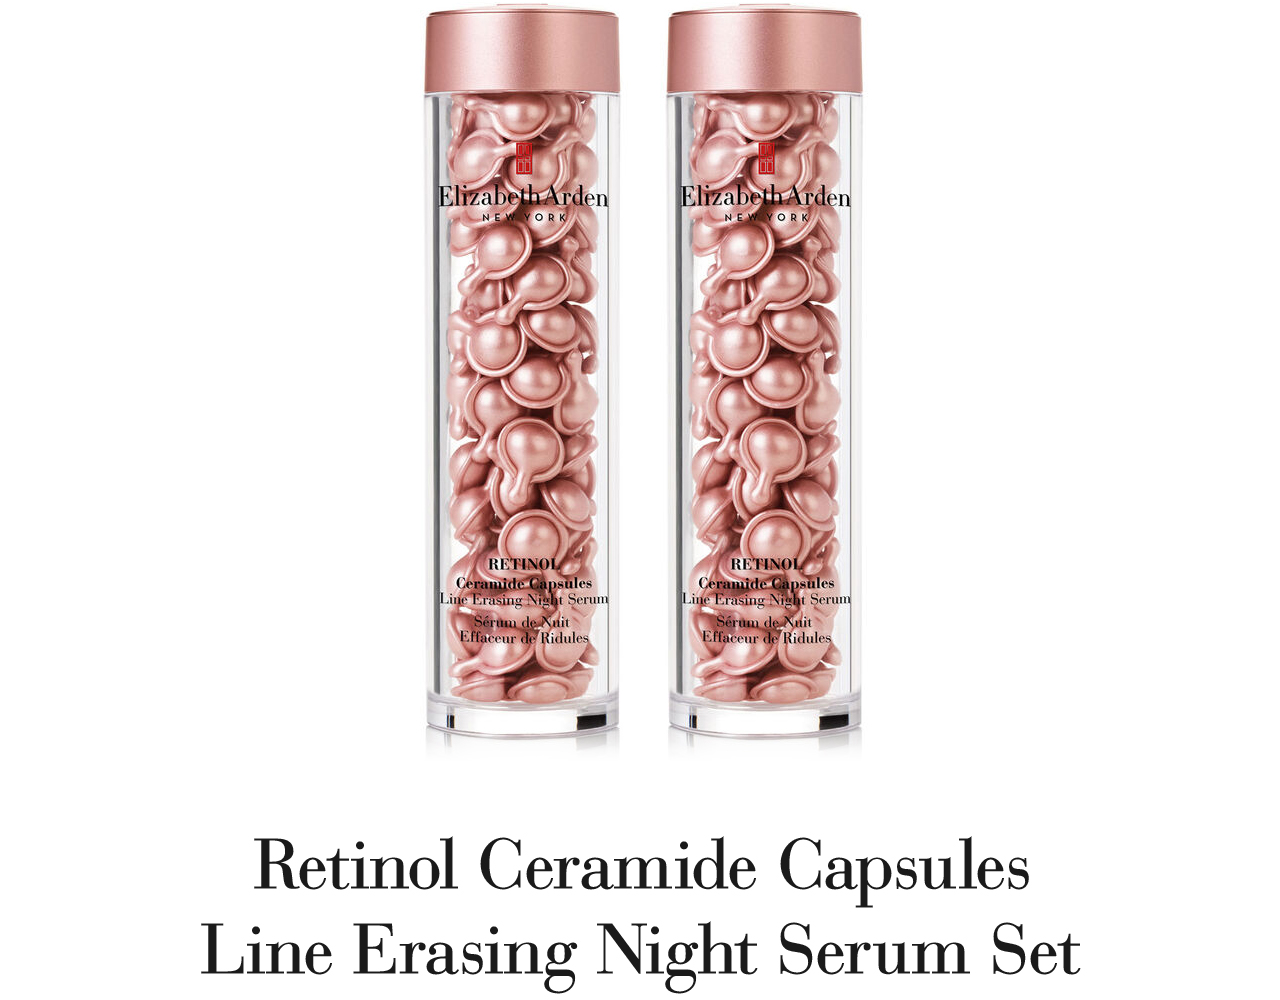 Retinol Ceramide Capsules Line Erasing Night Serum Set